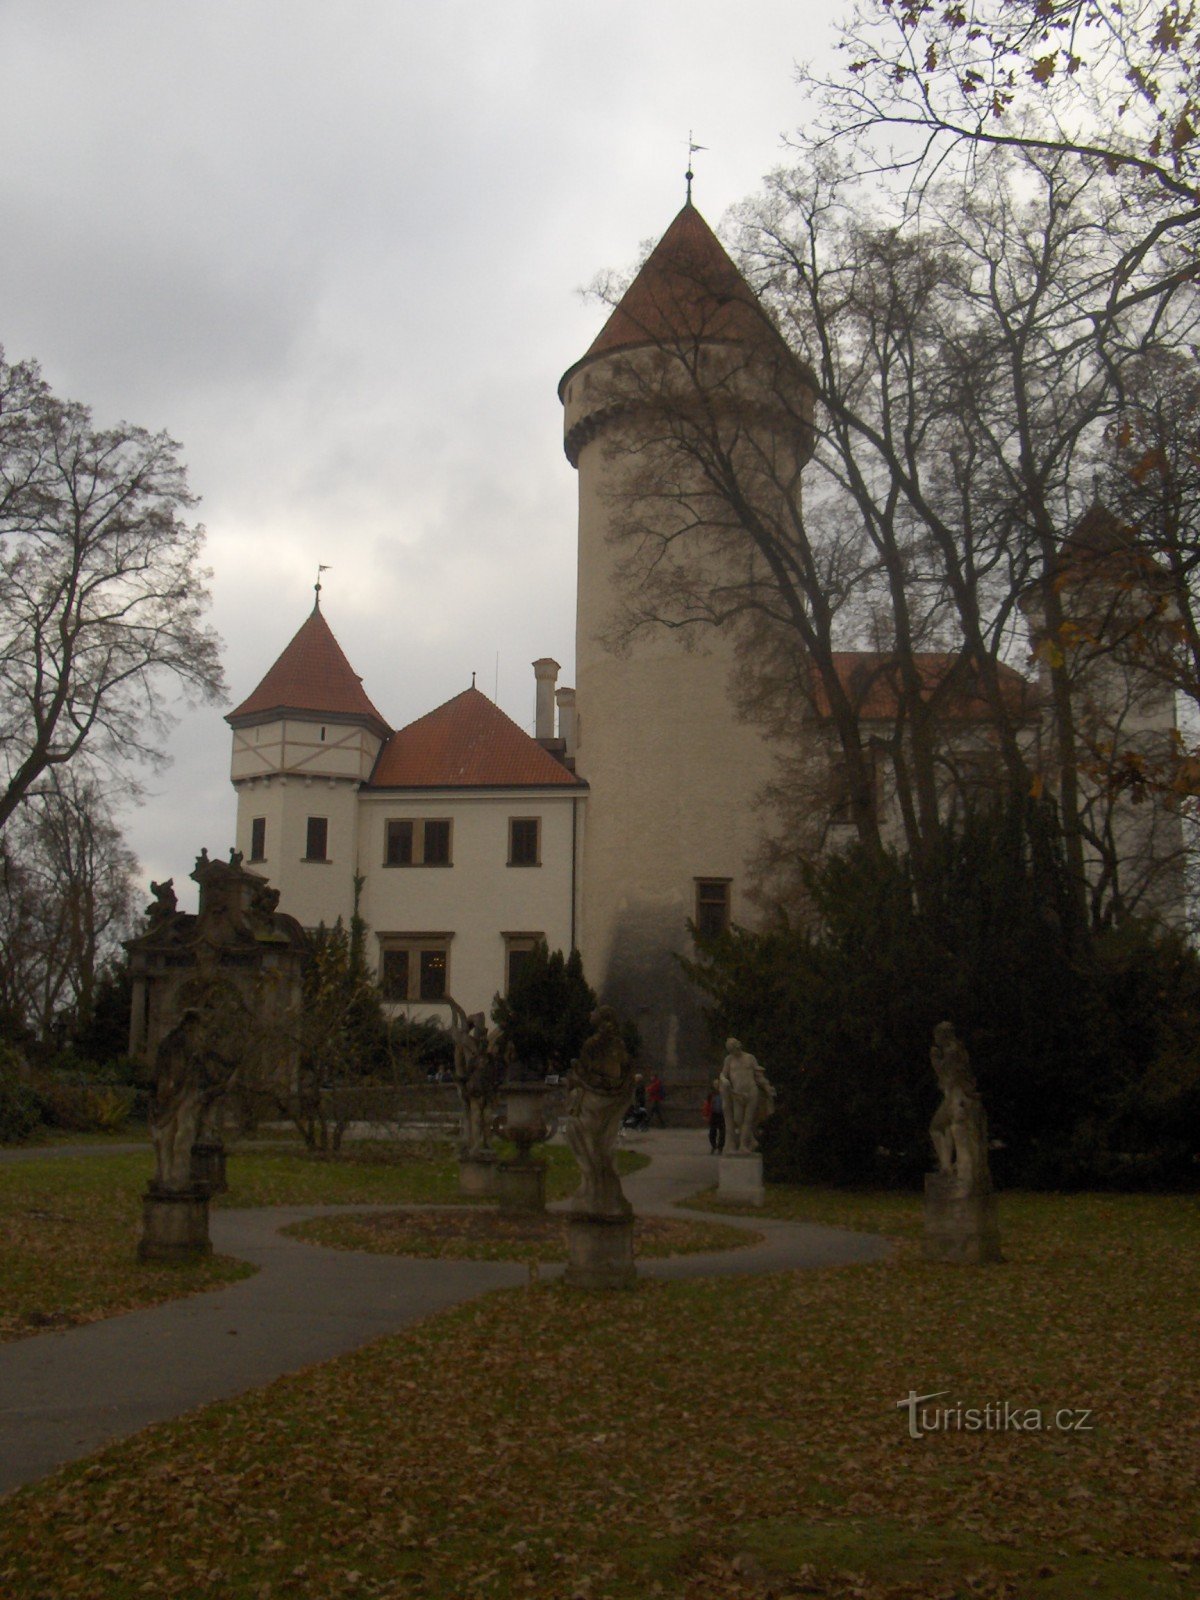 Hojas caídas alrededor del castillo de Konopiště.